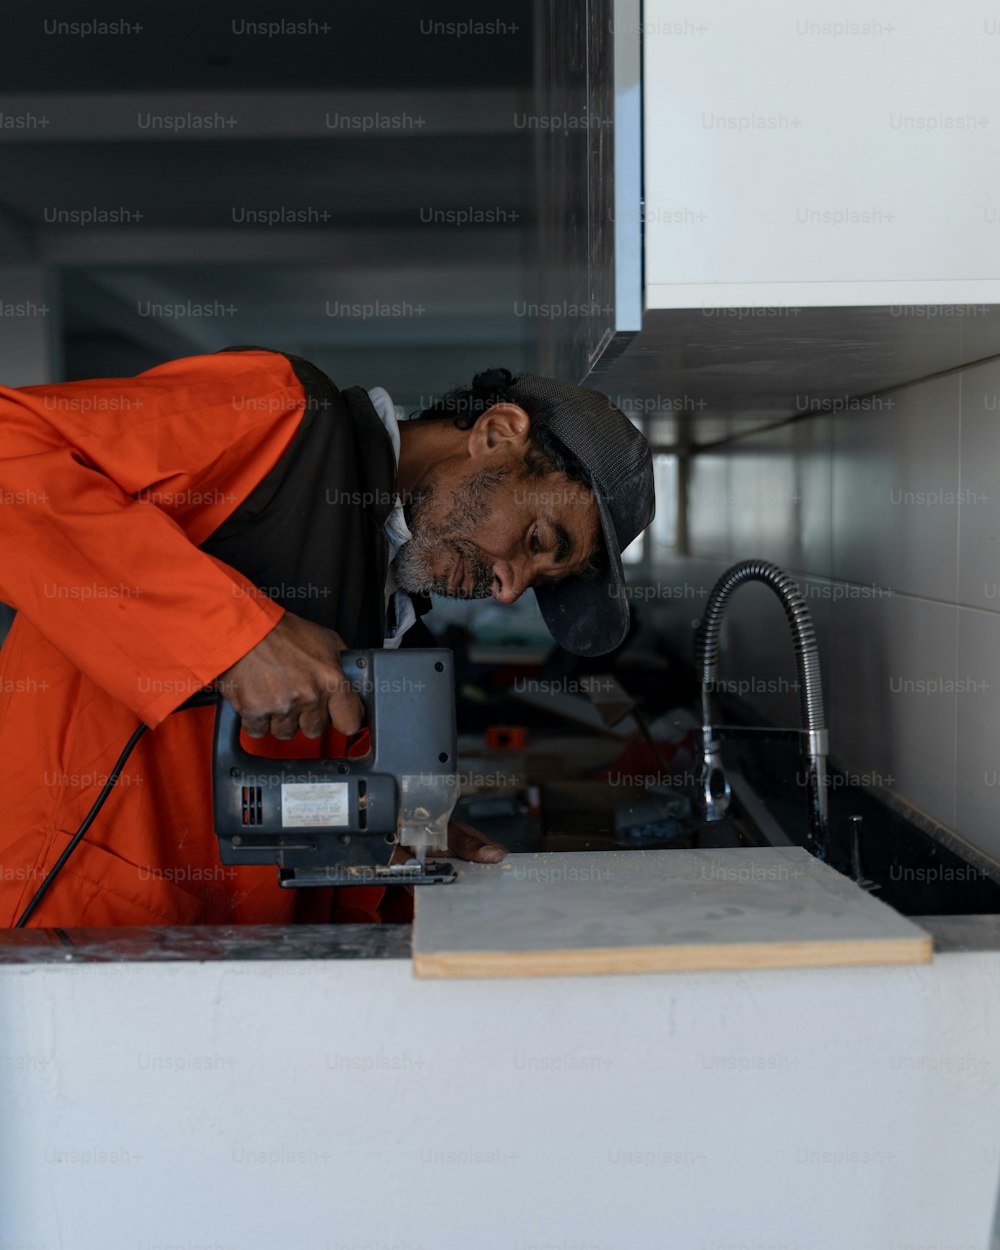 Un hombre con un mono naranja trabajando en una máquina